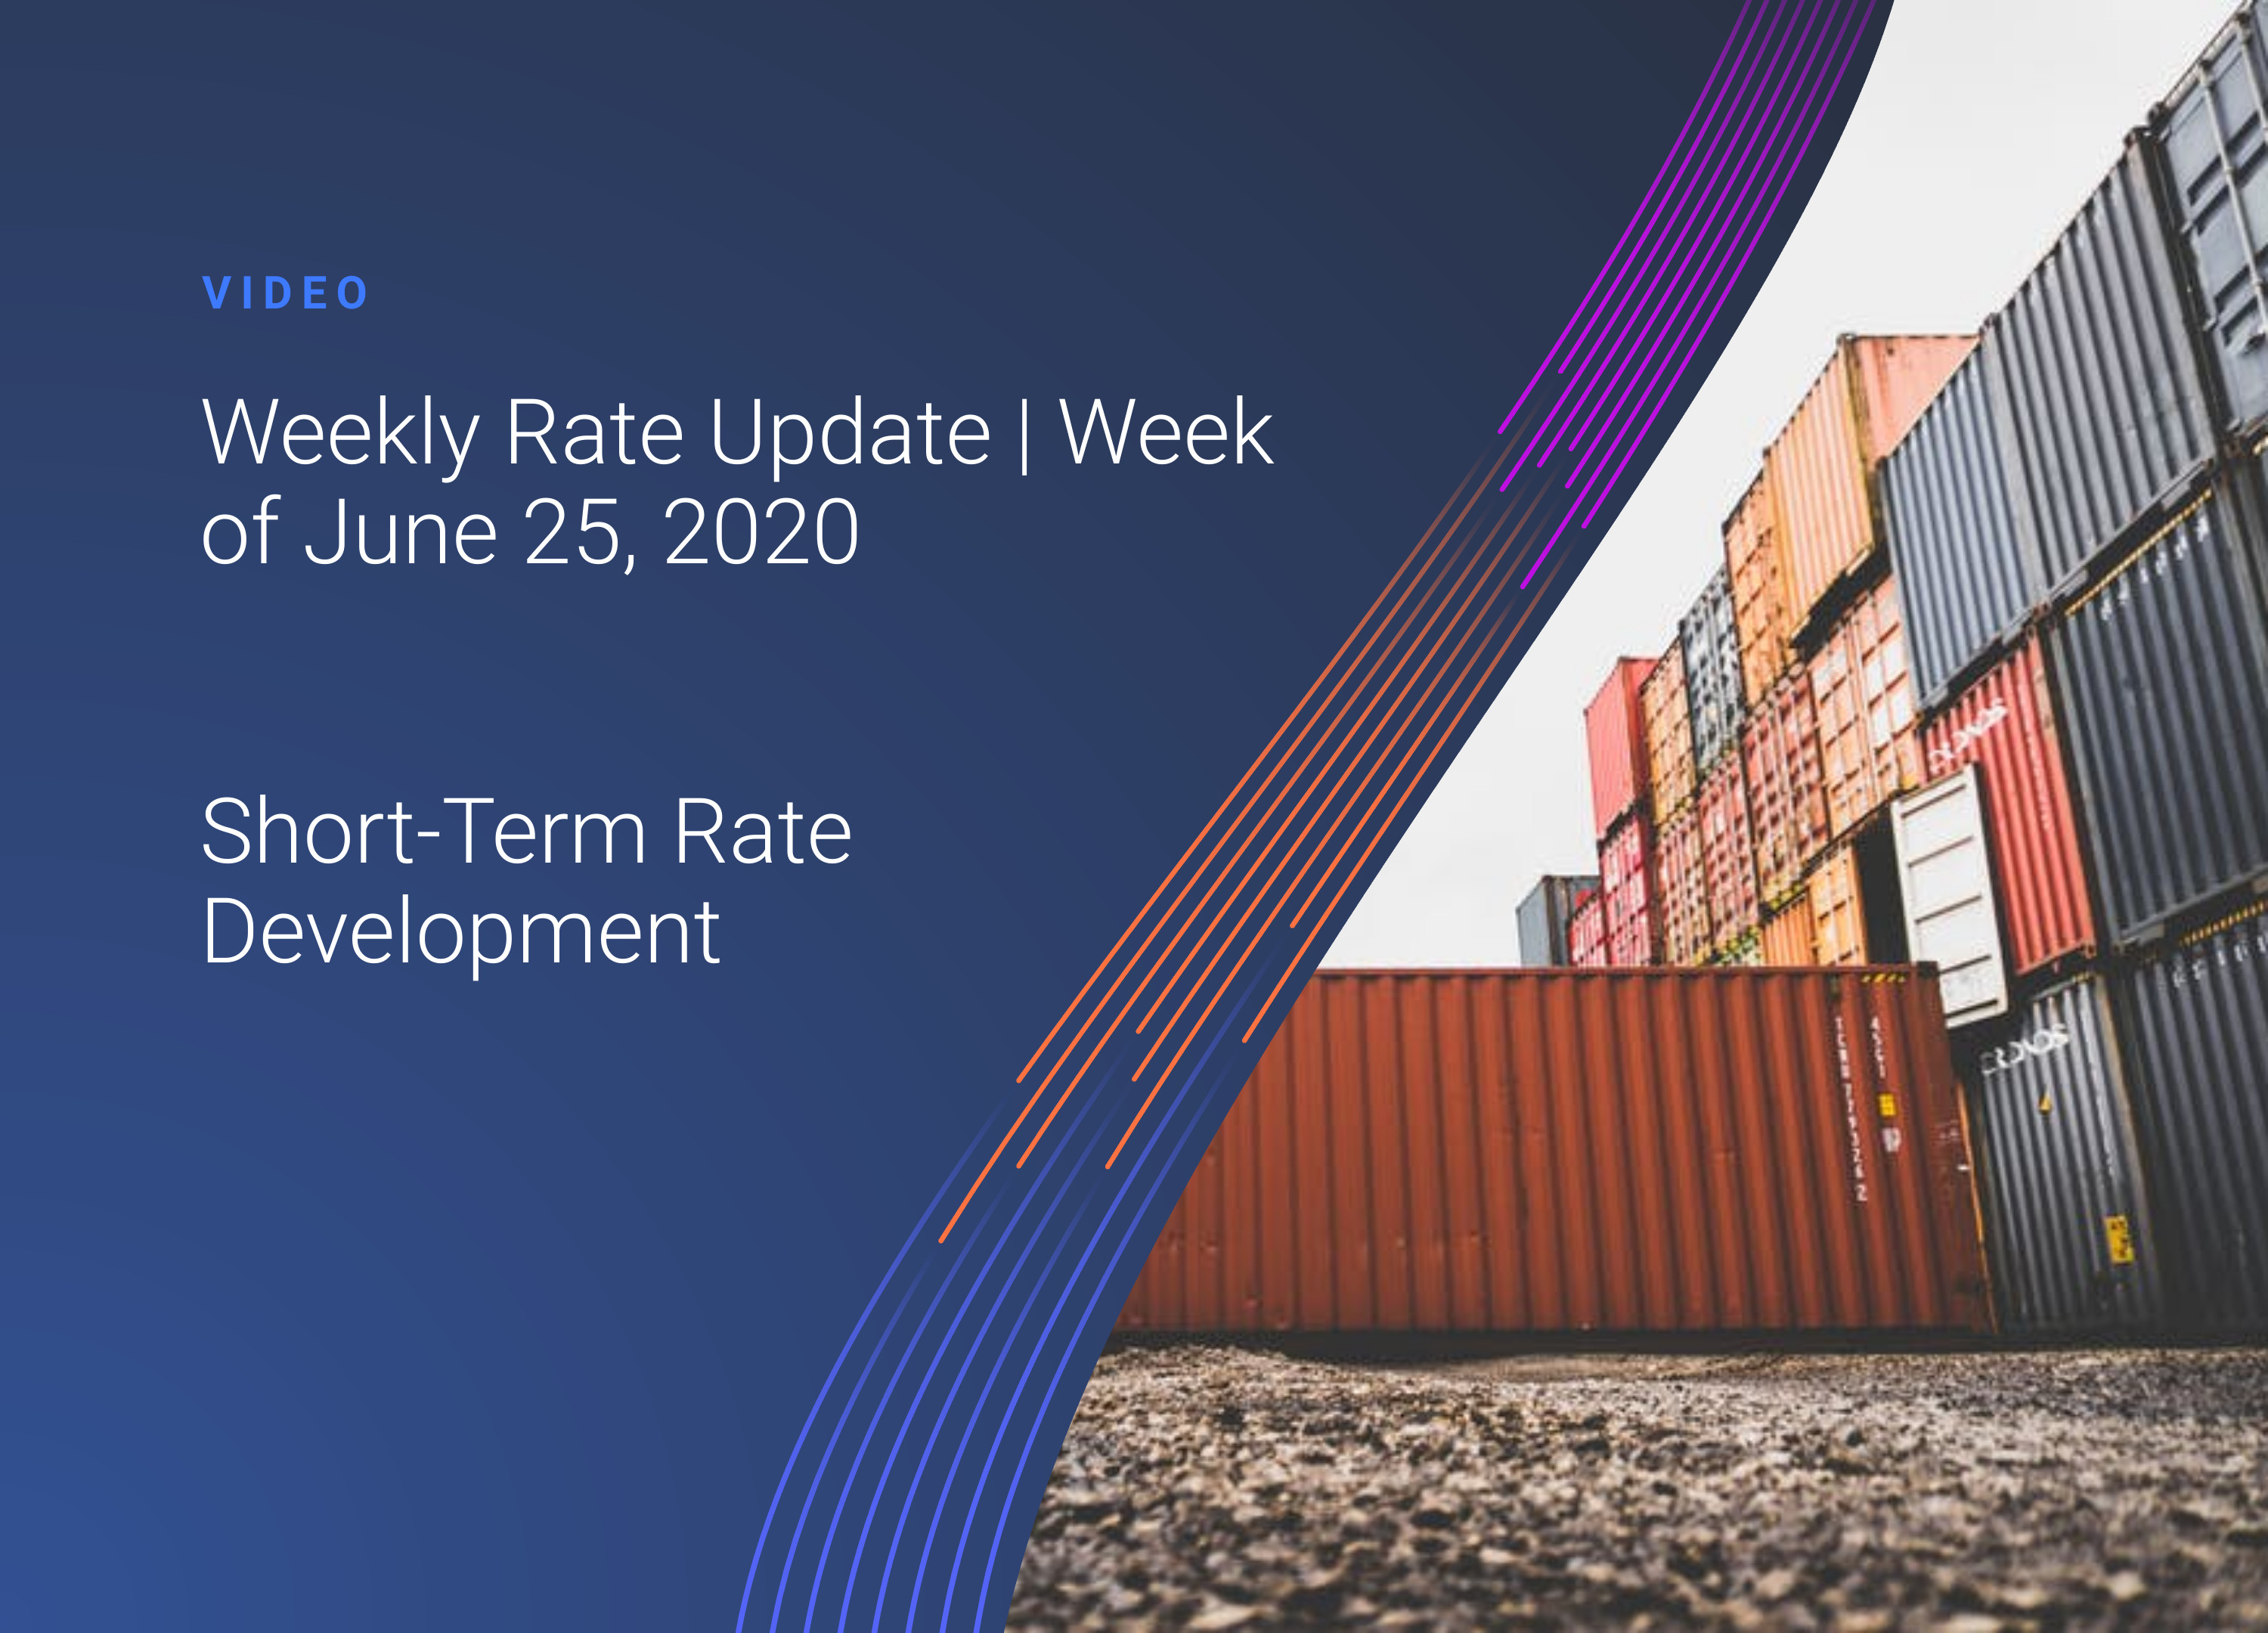 Weekly Rate Update: Week 26